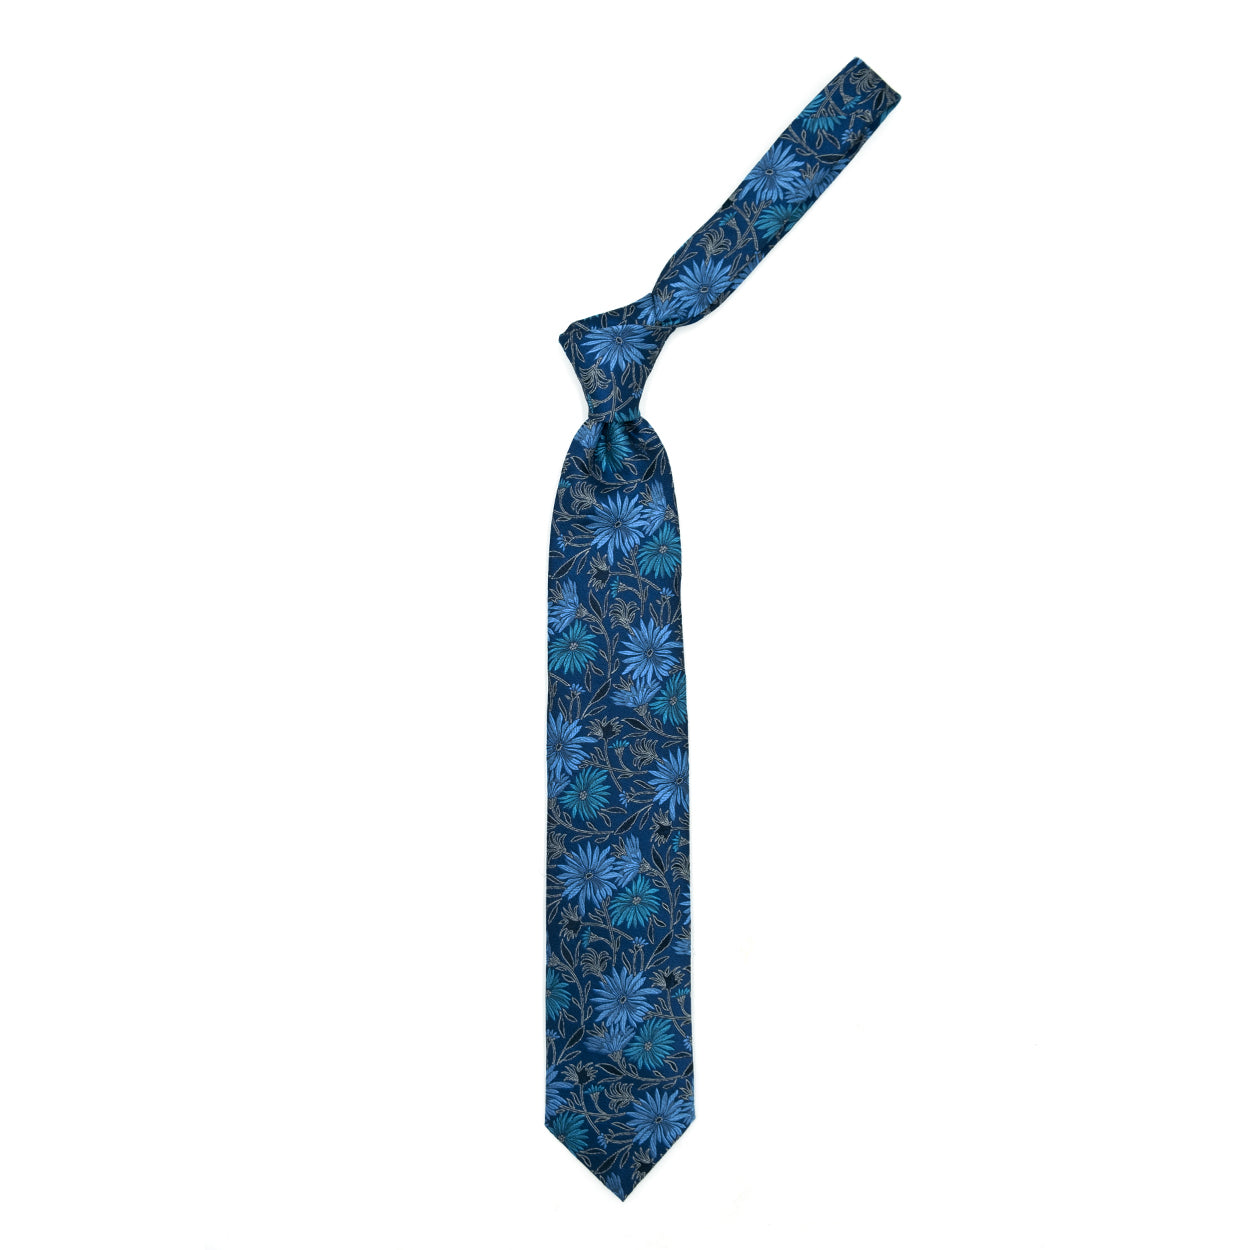 Cravatta blu con fantasia floreale azzurra e grigia